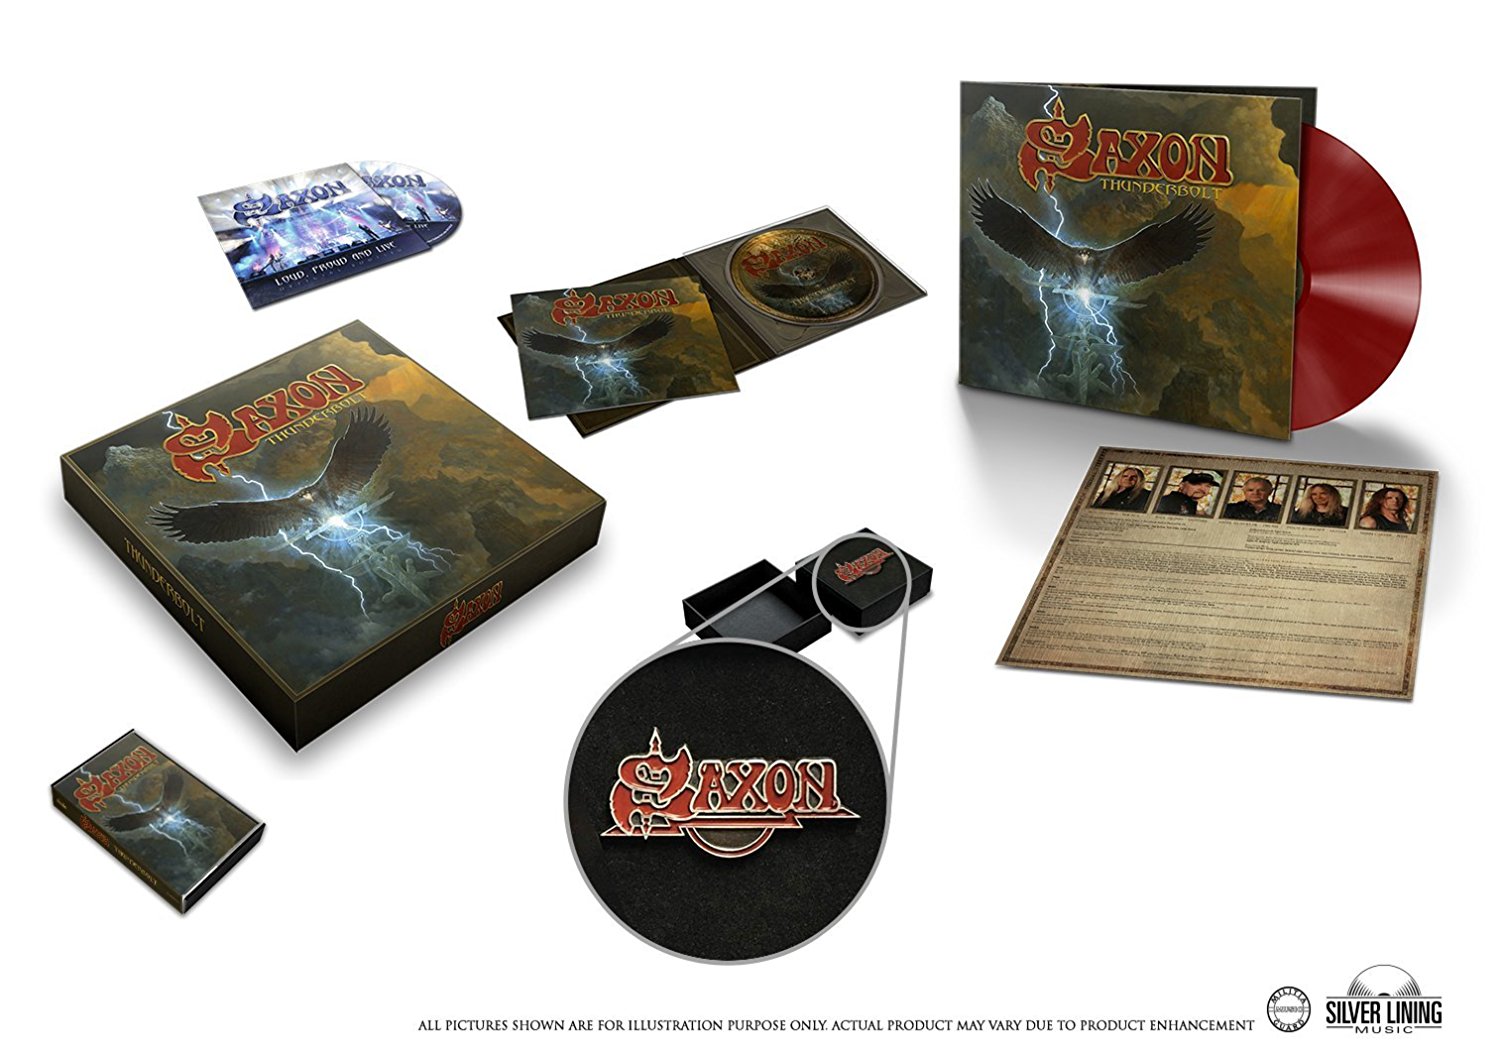 Saxon "Thunderbolt" Deluxe Box Set - CD, vinyl, cassette tape + Saxon's iconic "Eagle" Pin Badge